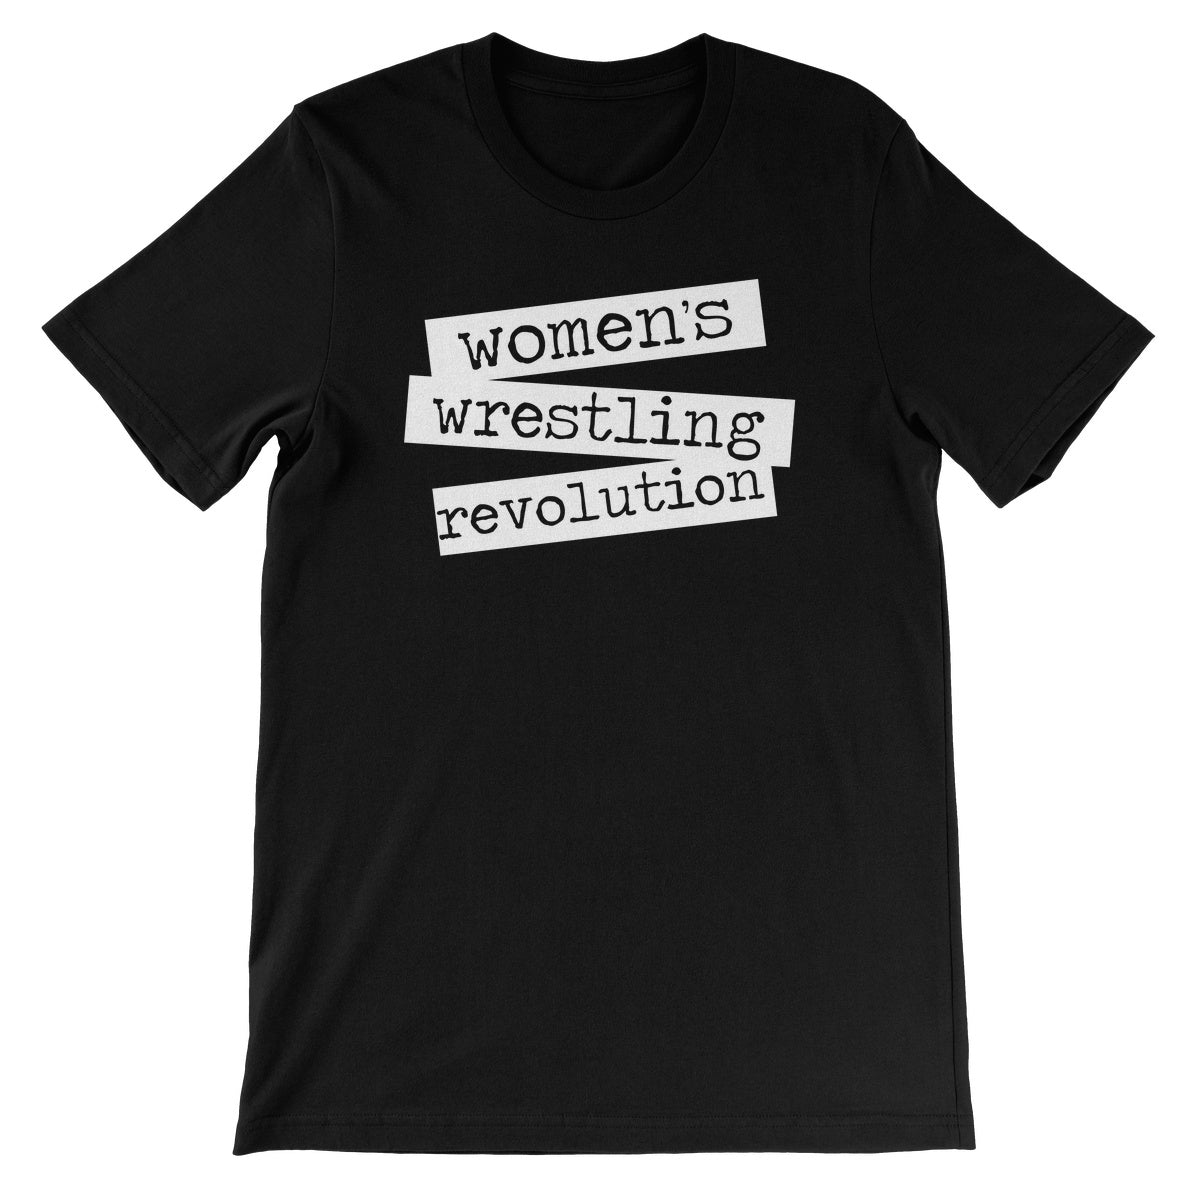 Let's Wrestle Women's Wrestling Revolution Unisex Short Sleeve T-Shirt